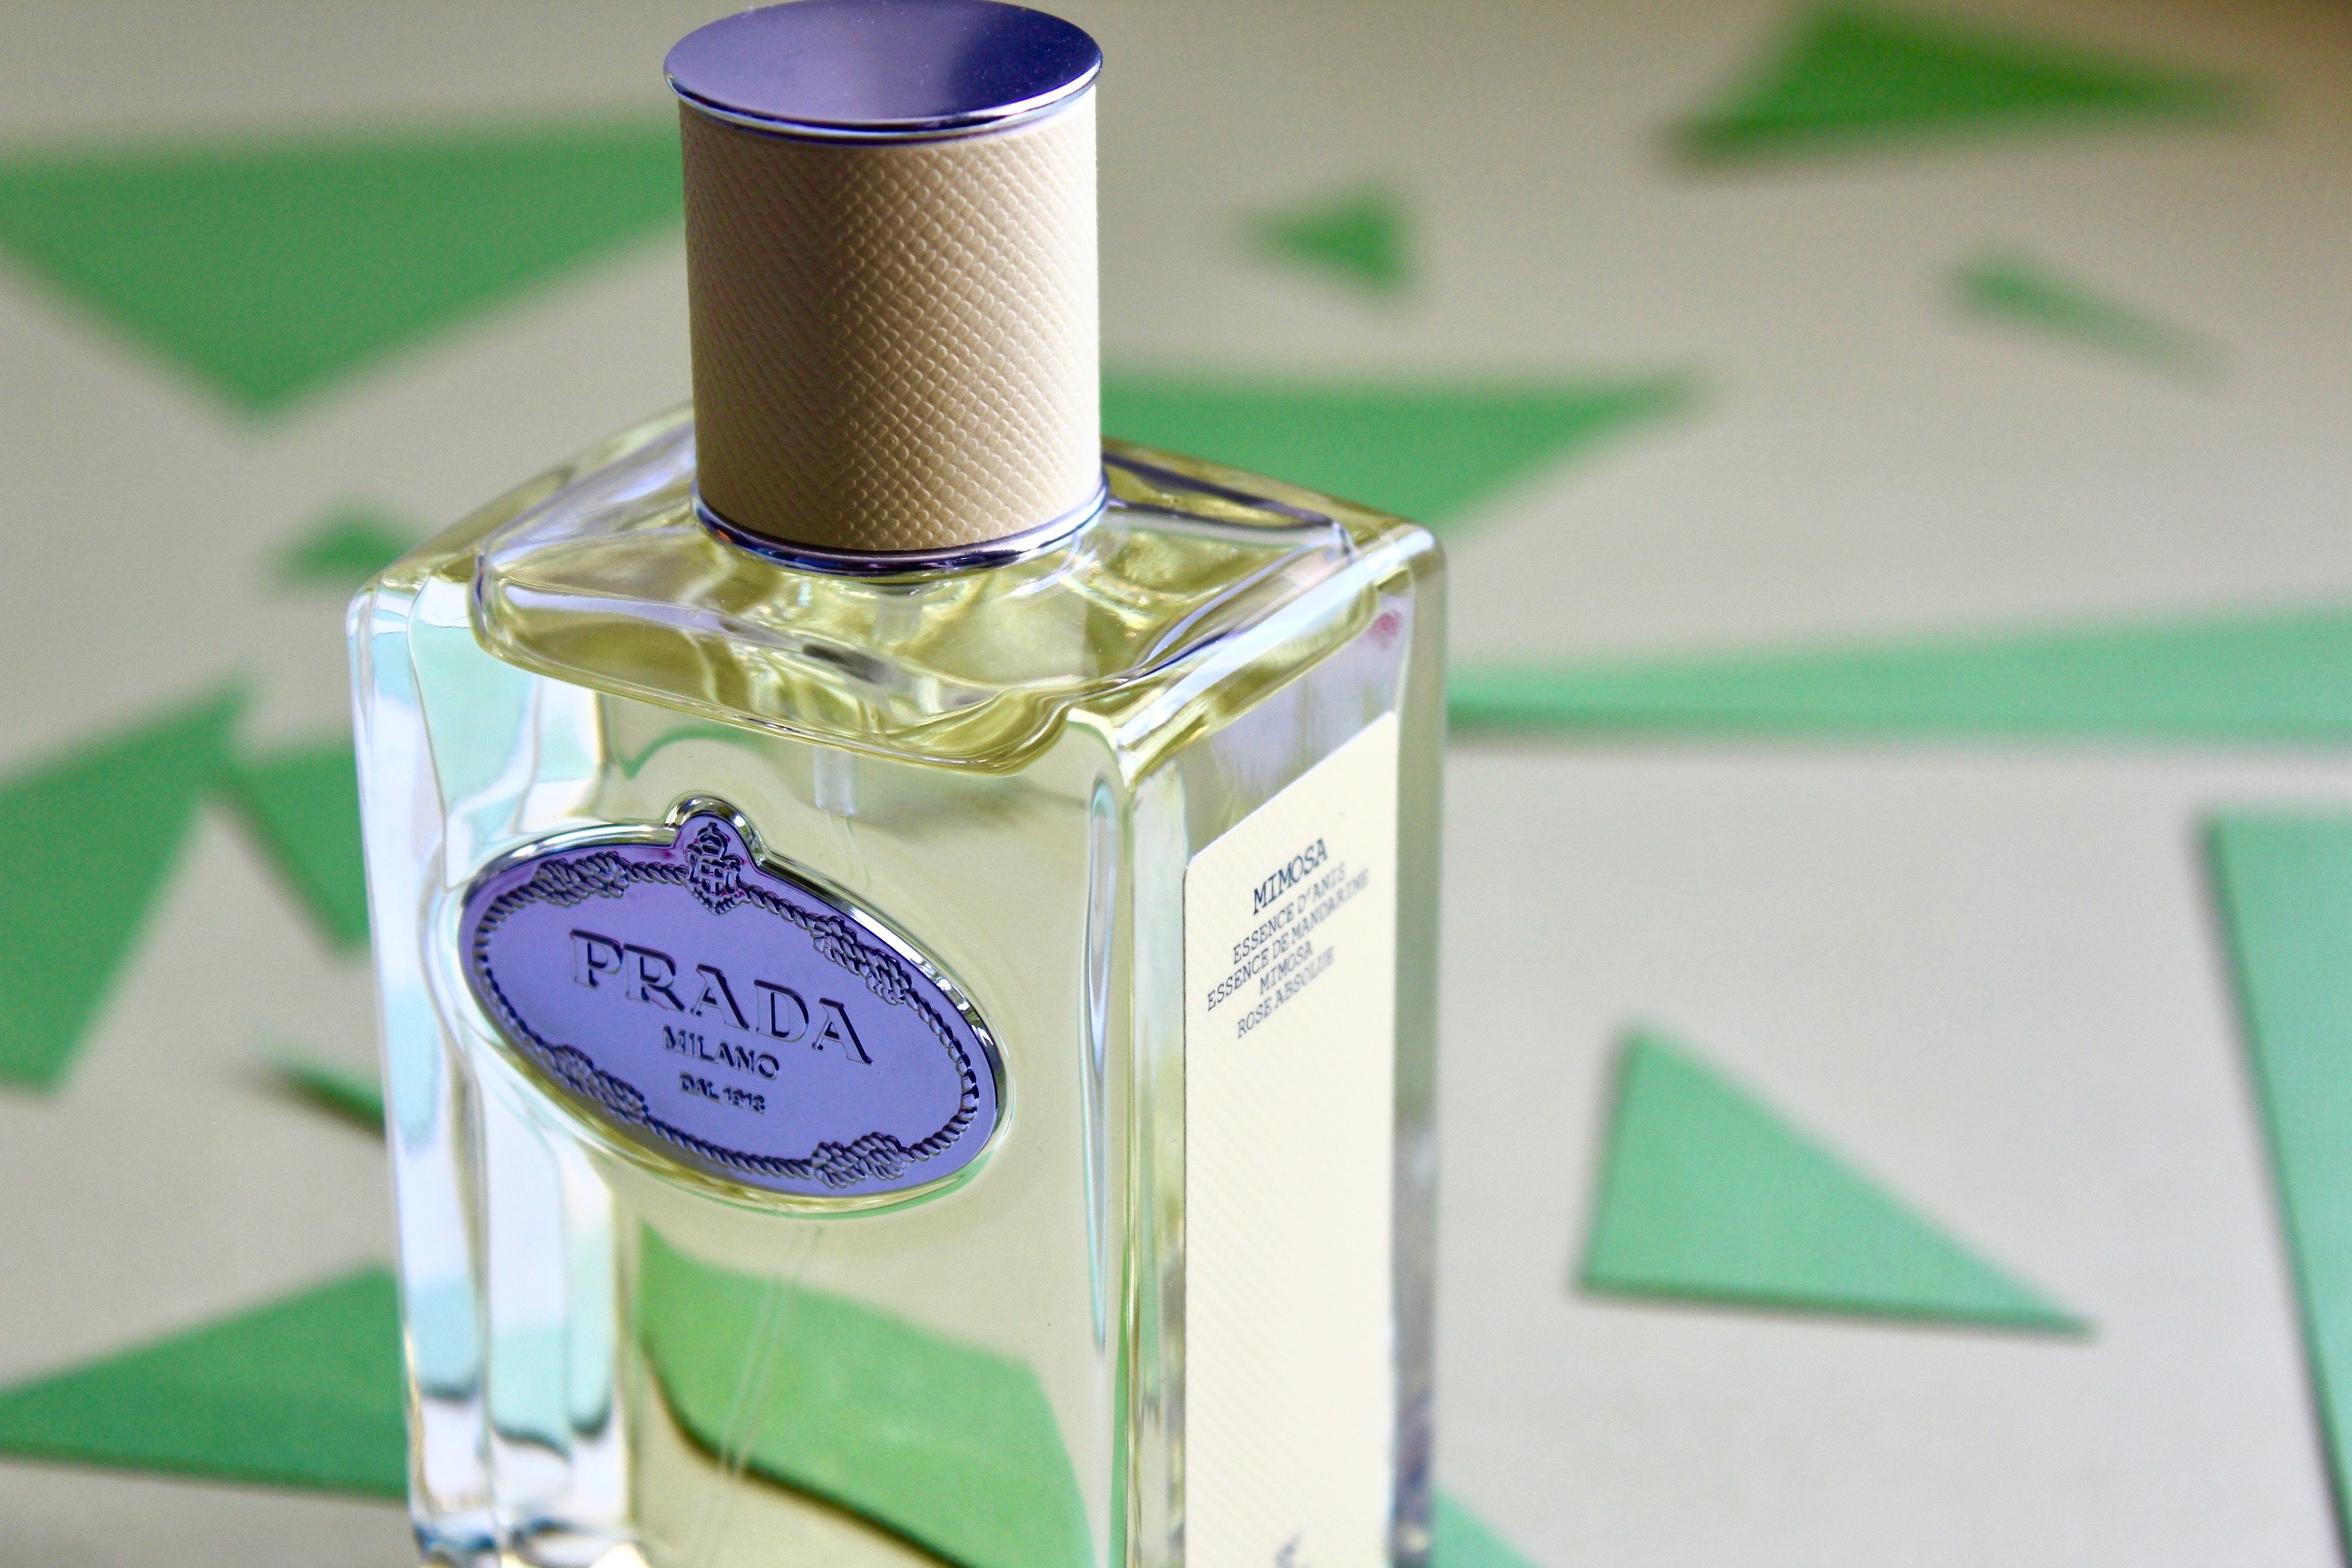 prada rose perfume review